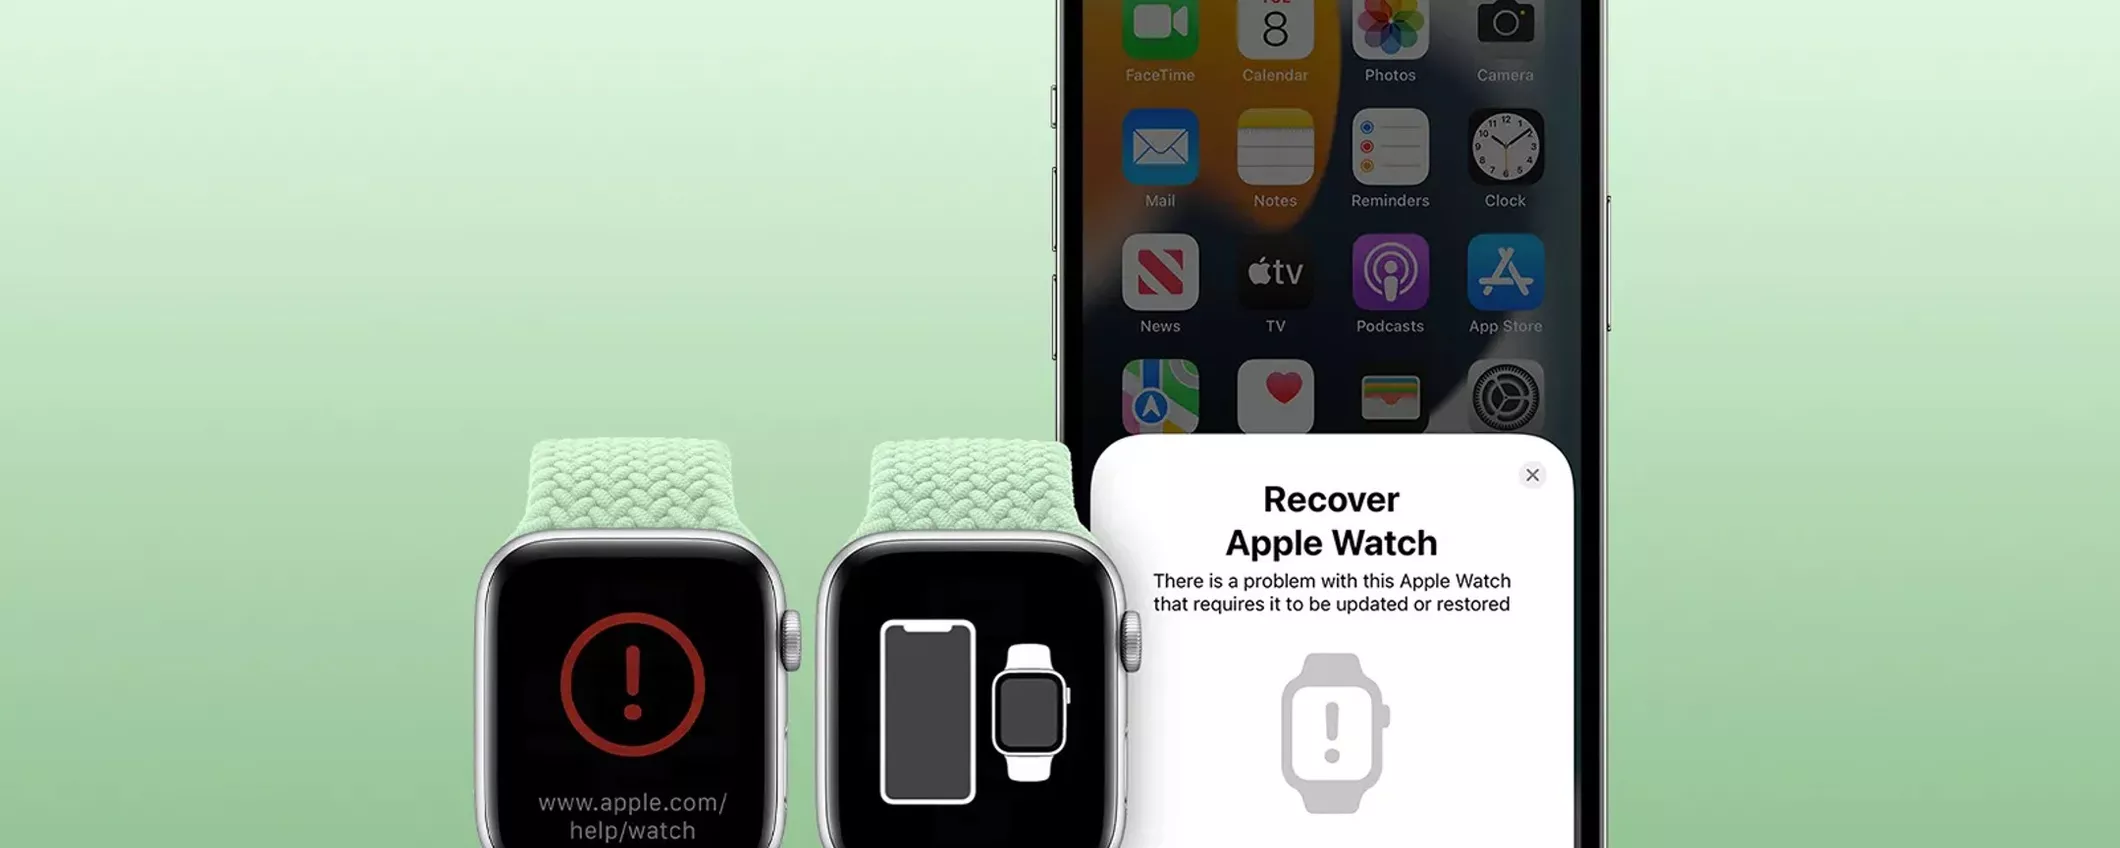 Apple Watch: come ripristinare il firmware tramite iPhone con iOS 15.4